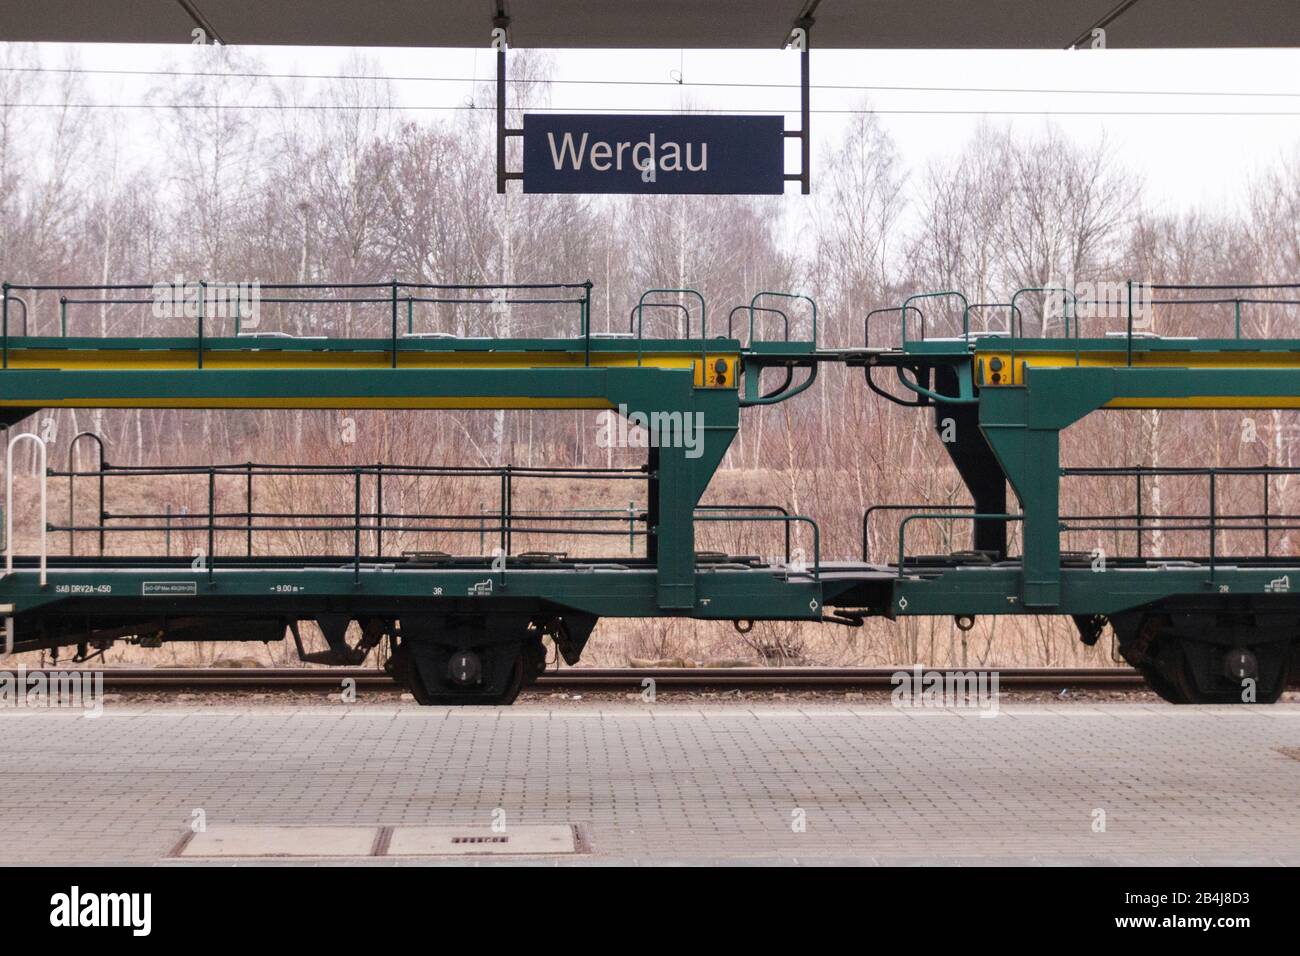 Deutschland, Sachsen, Werdau, Güterzug im Bahnhof Werdau, an der Bahnstrecke Leipzig-Hof. Stock Photo